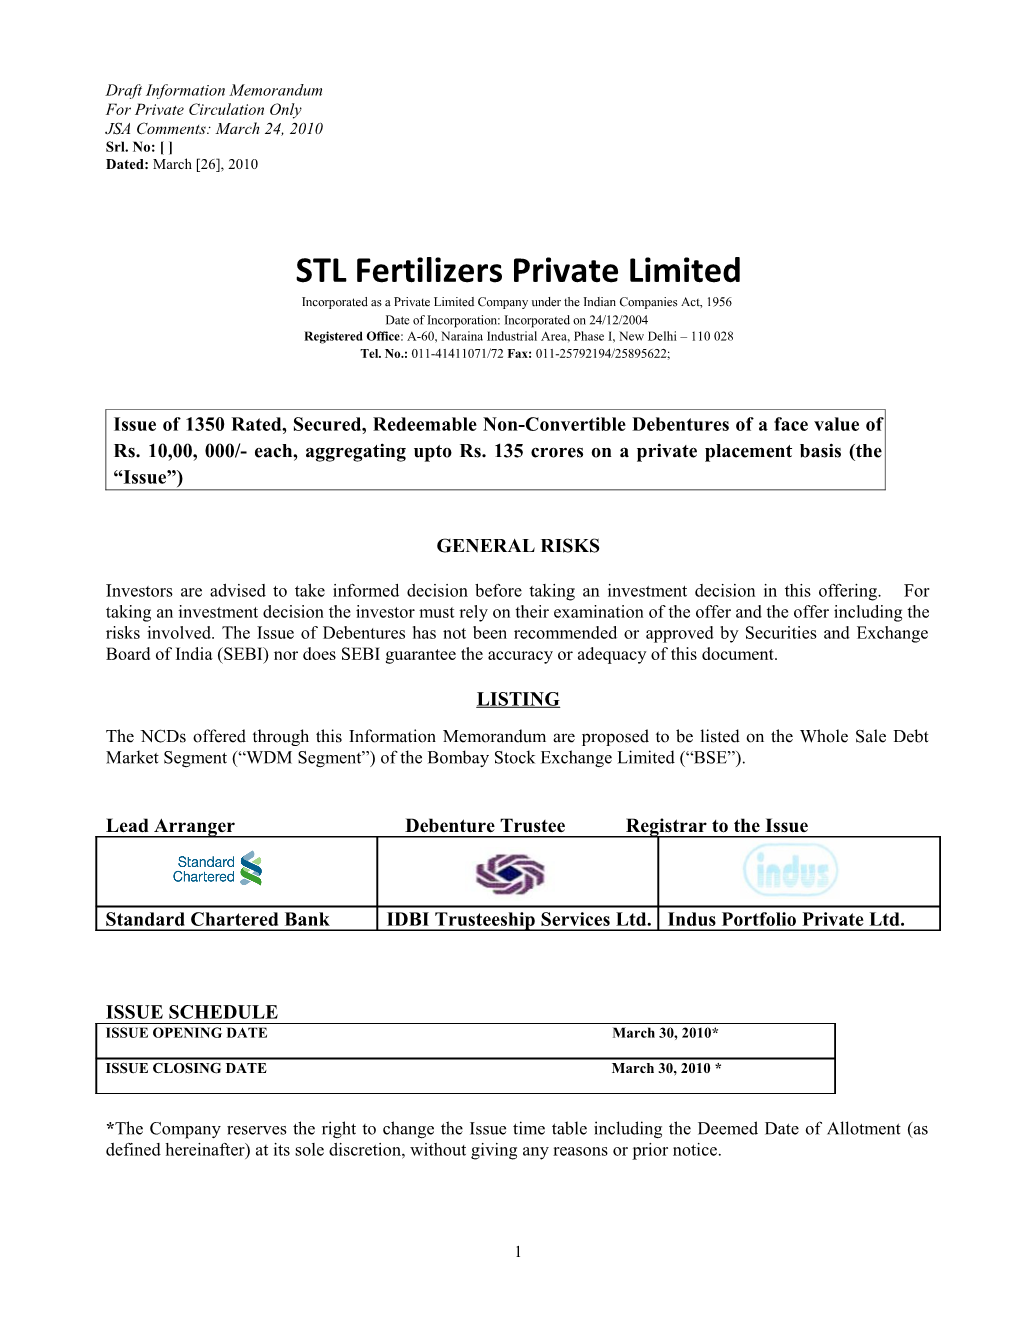 STL Fertilizers Private Limited